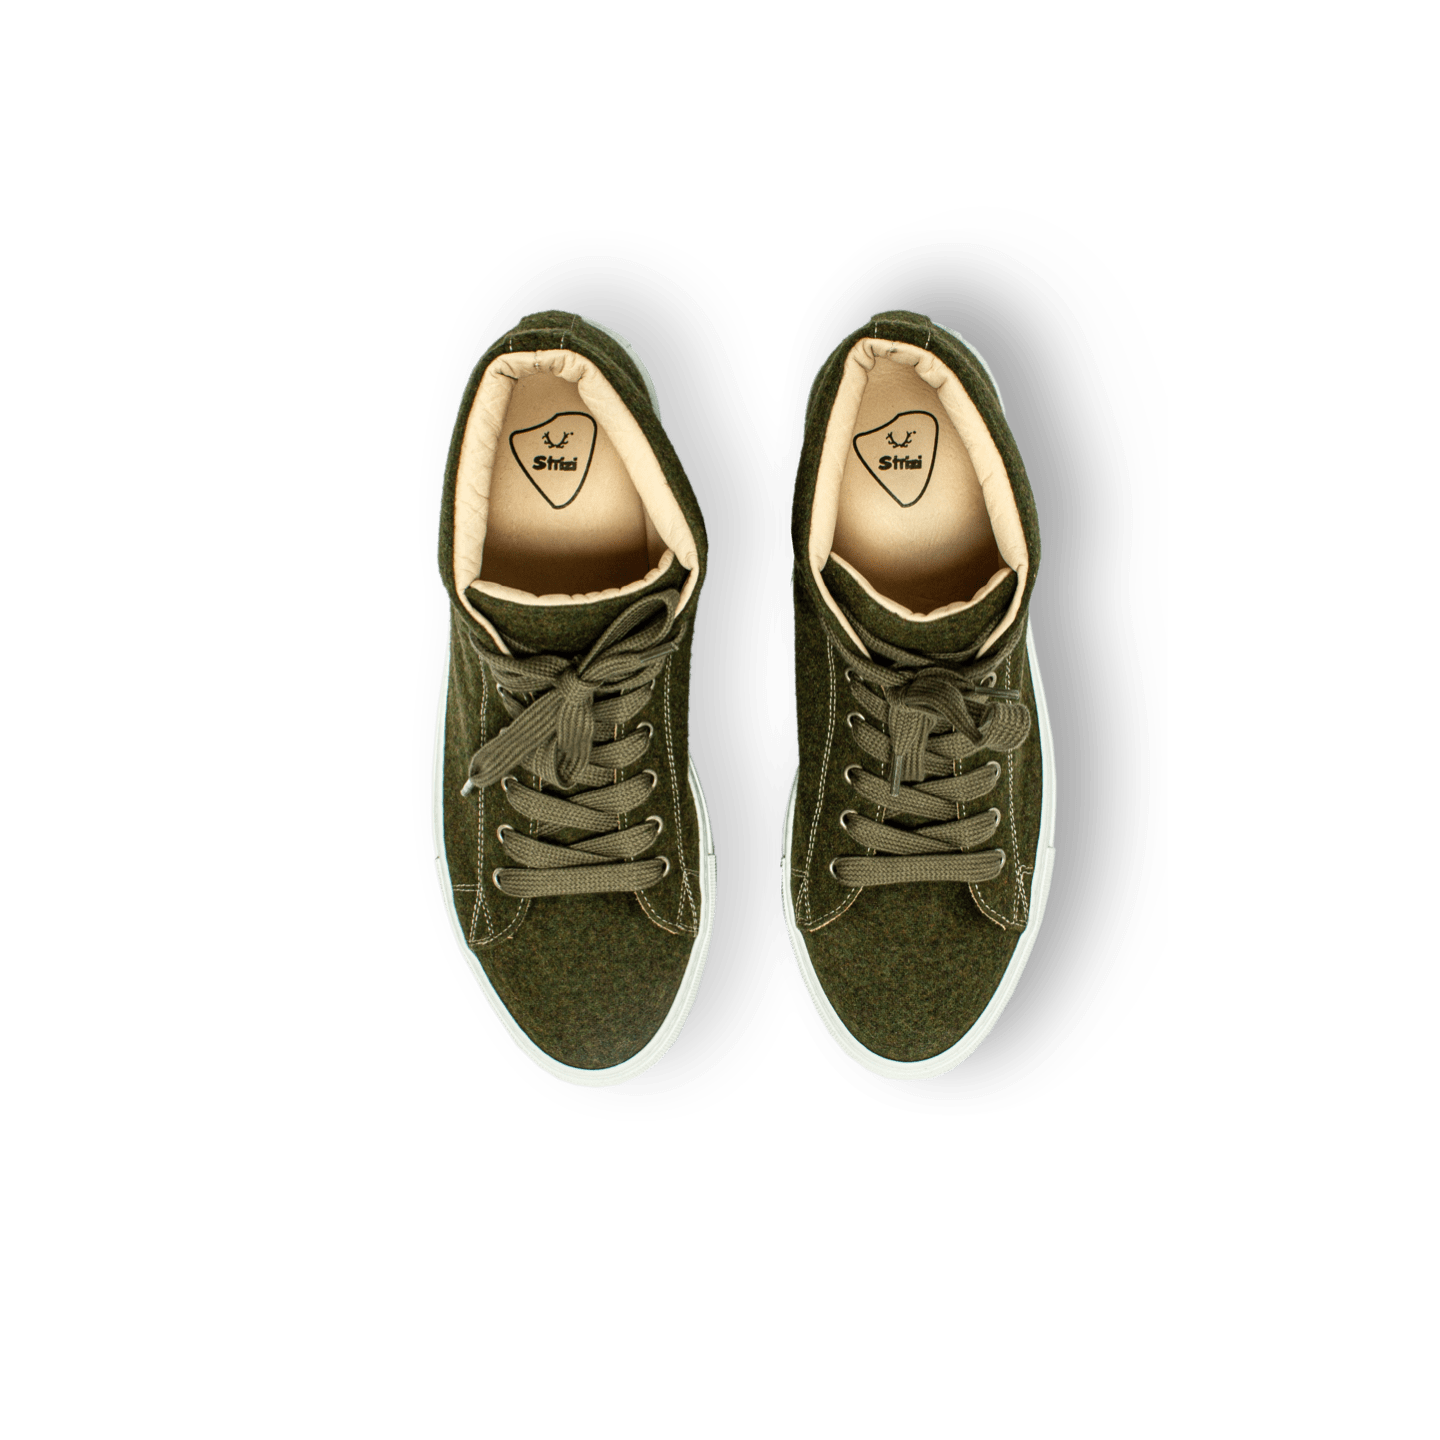 Strizi Schuhe Sneaker grün midcut 4 - Strizi Loden sneakers „mid cut“